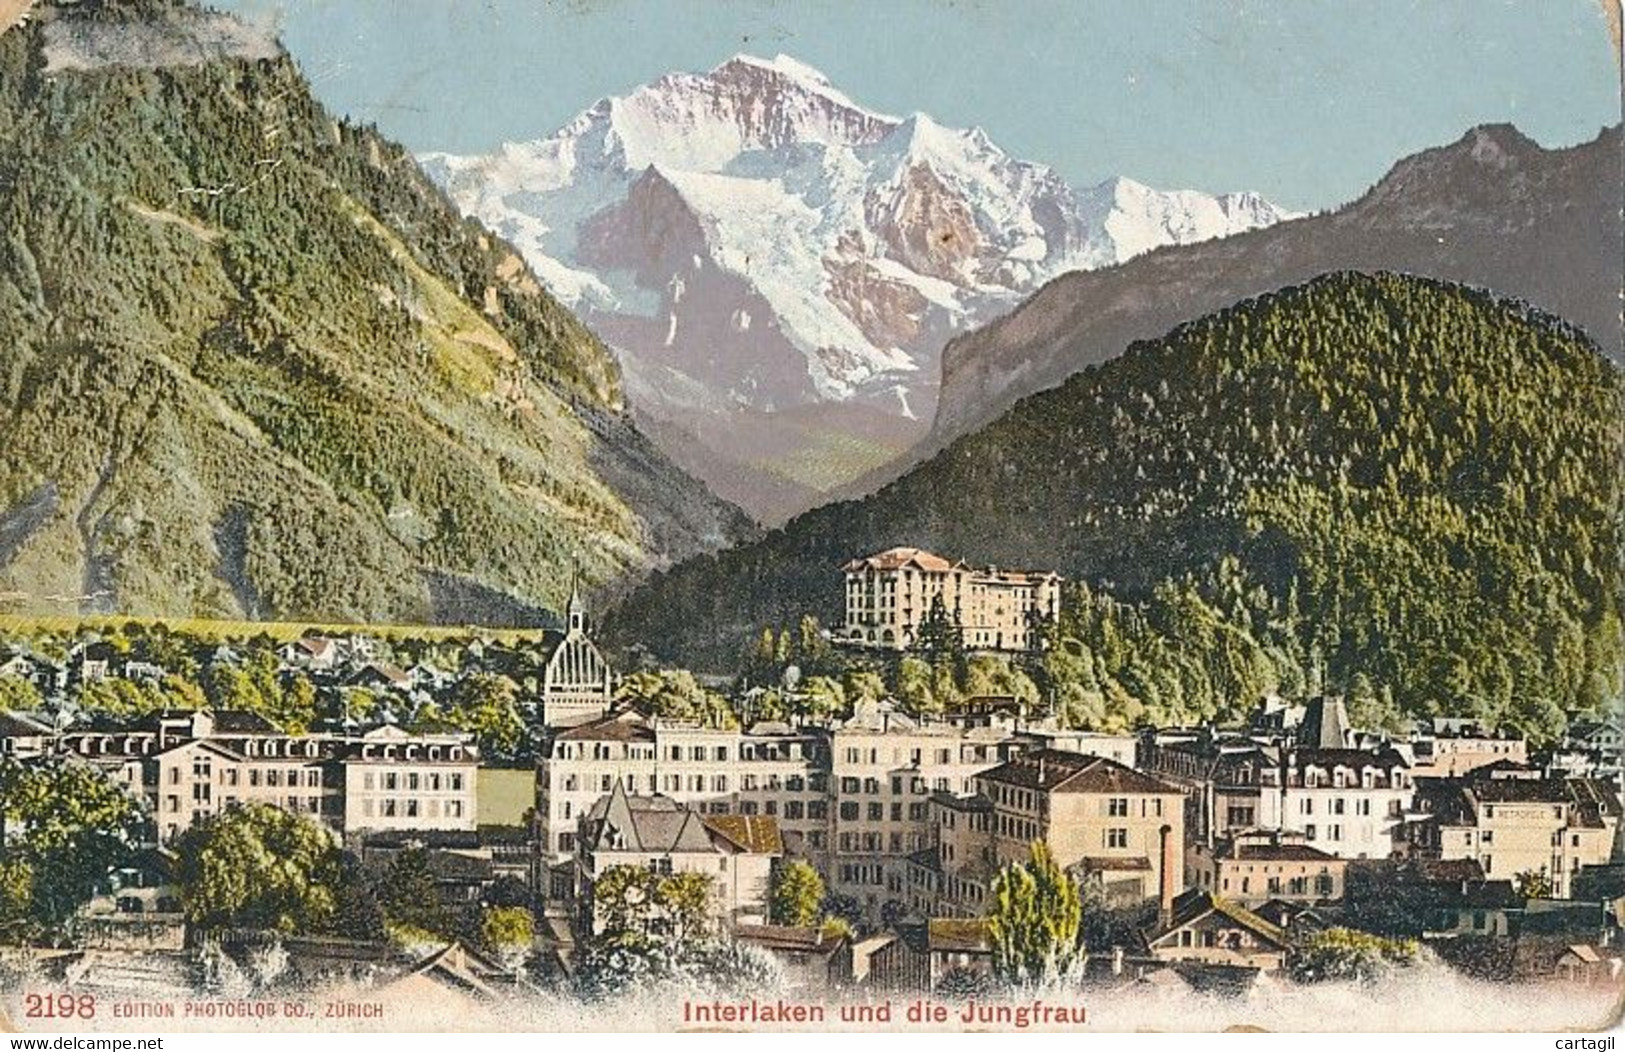 Lot -L471-SUISSE - CANTON DE BERNE Belle sélection 40 cartes postales ( scans et description)